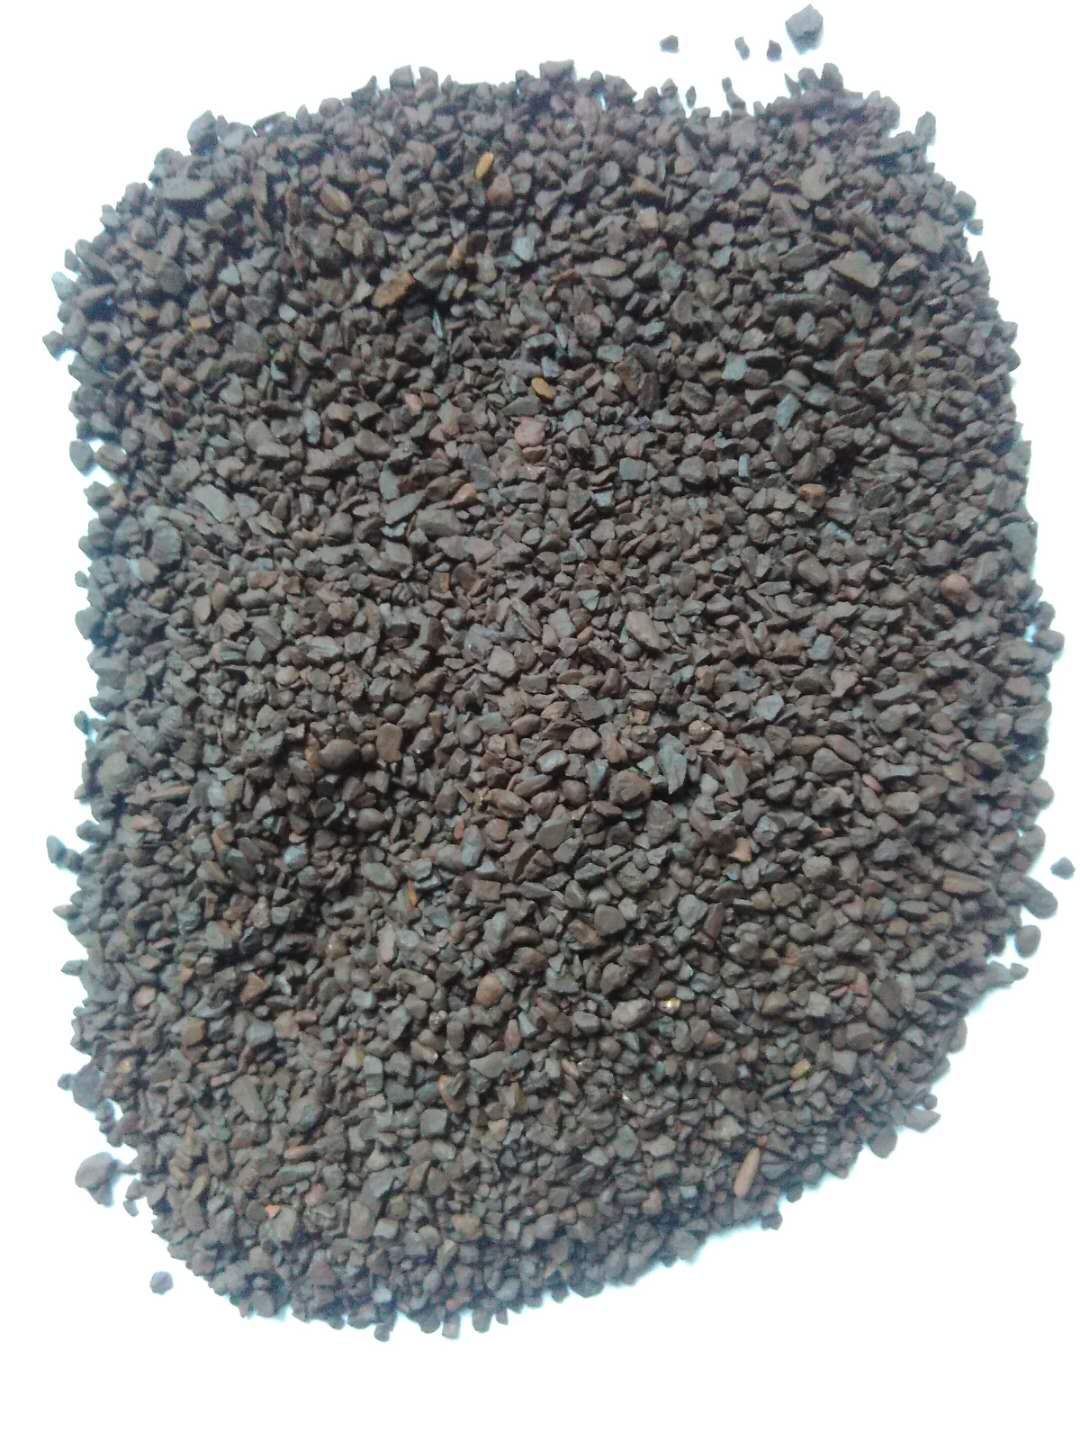 锰砂滤料 除铁锰用锰砂滤料 使用年限长